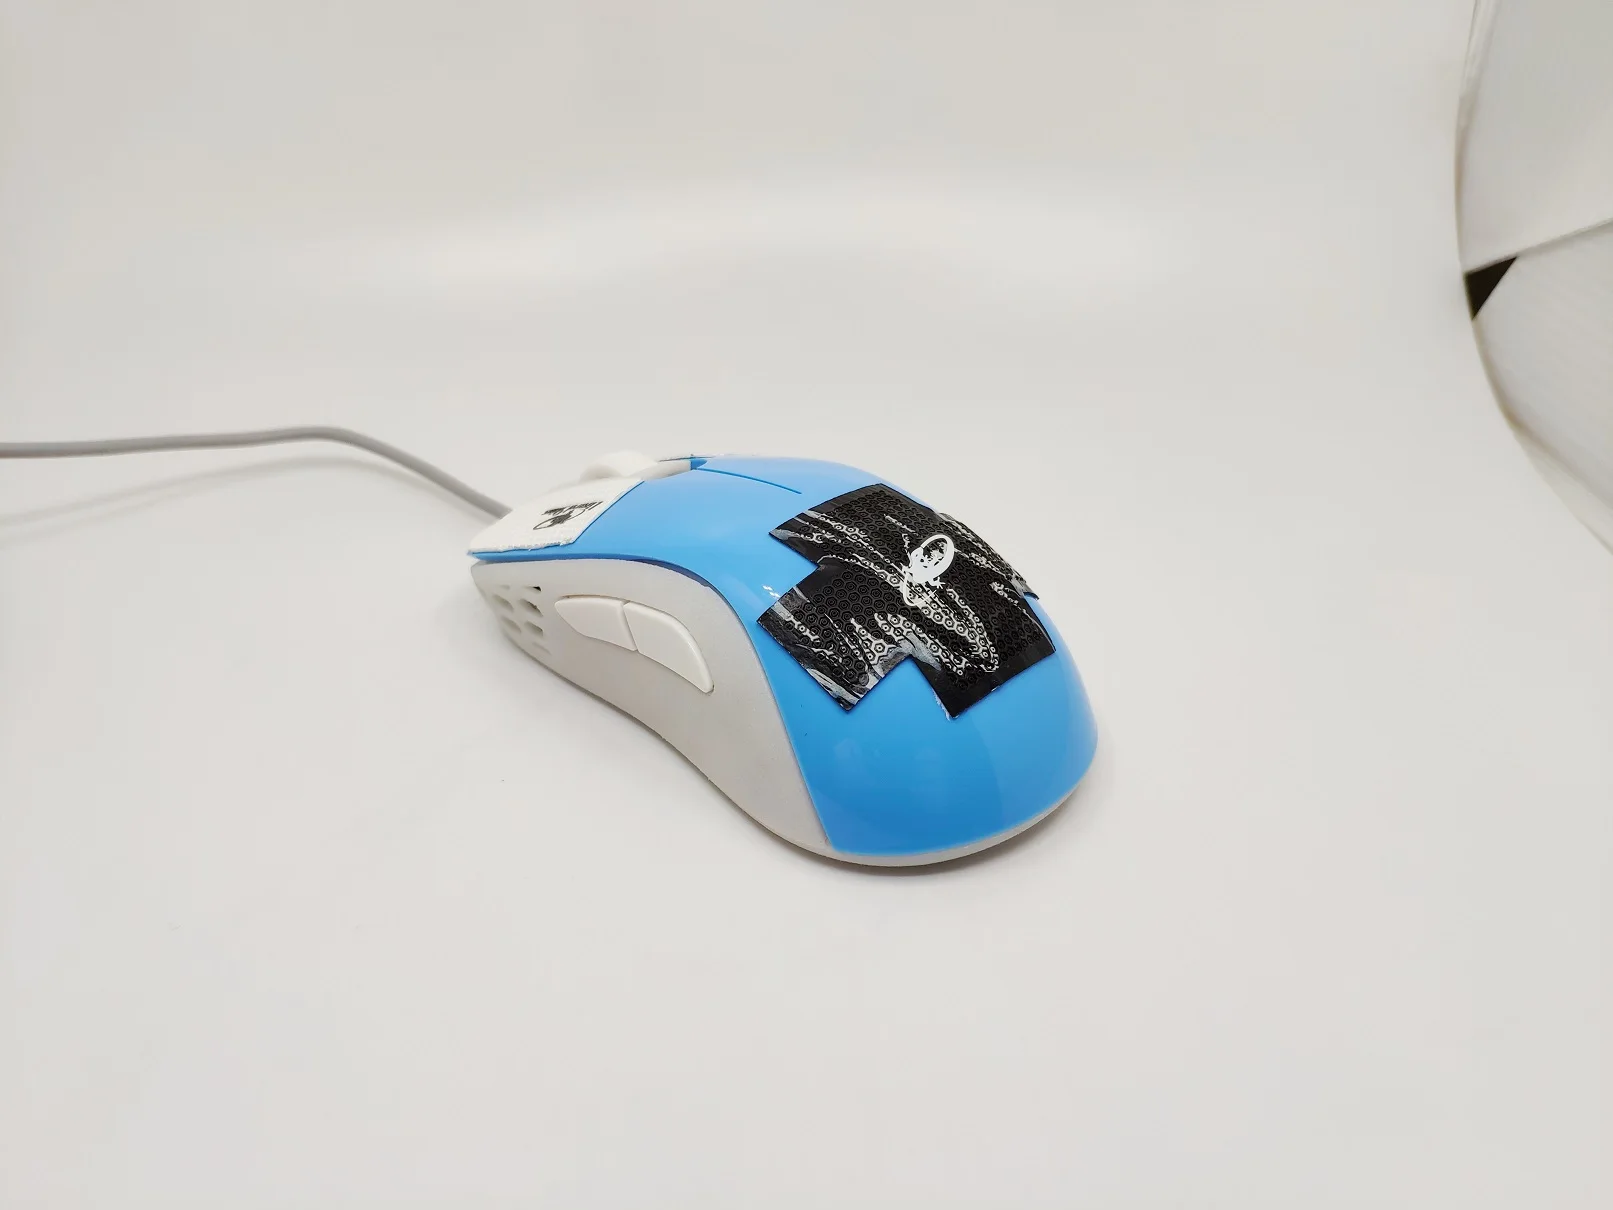 Электронная спортивная игра DIY mouse MOD чехол для Zowie Divina S2 оболочка с боковой панелью на заказ 19 г ультра светильник фантомный светильник ремонт выдалбливают